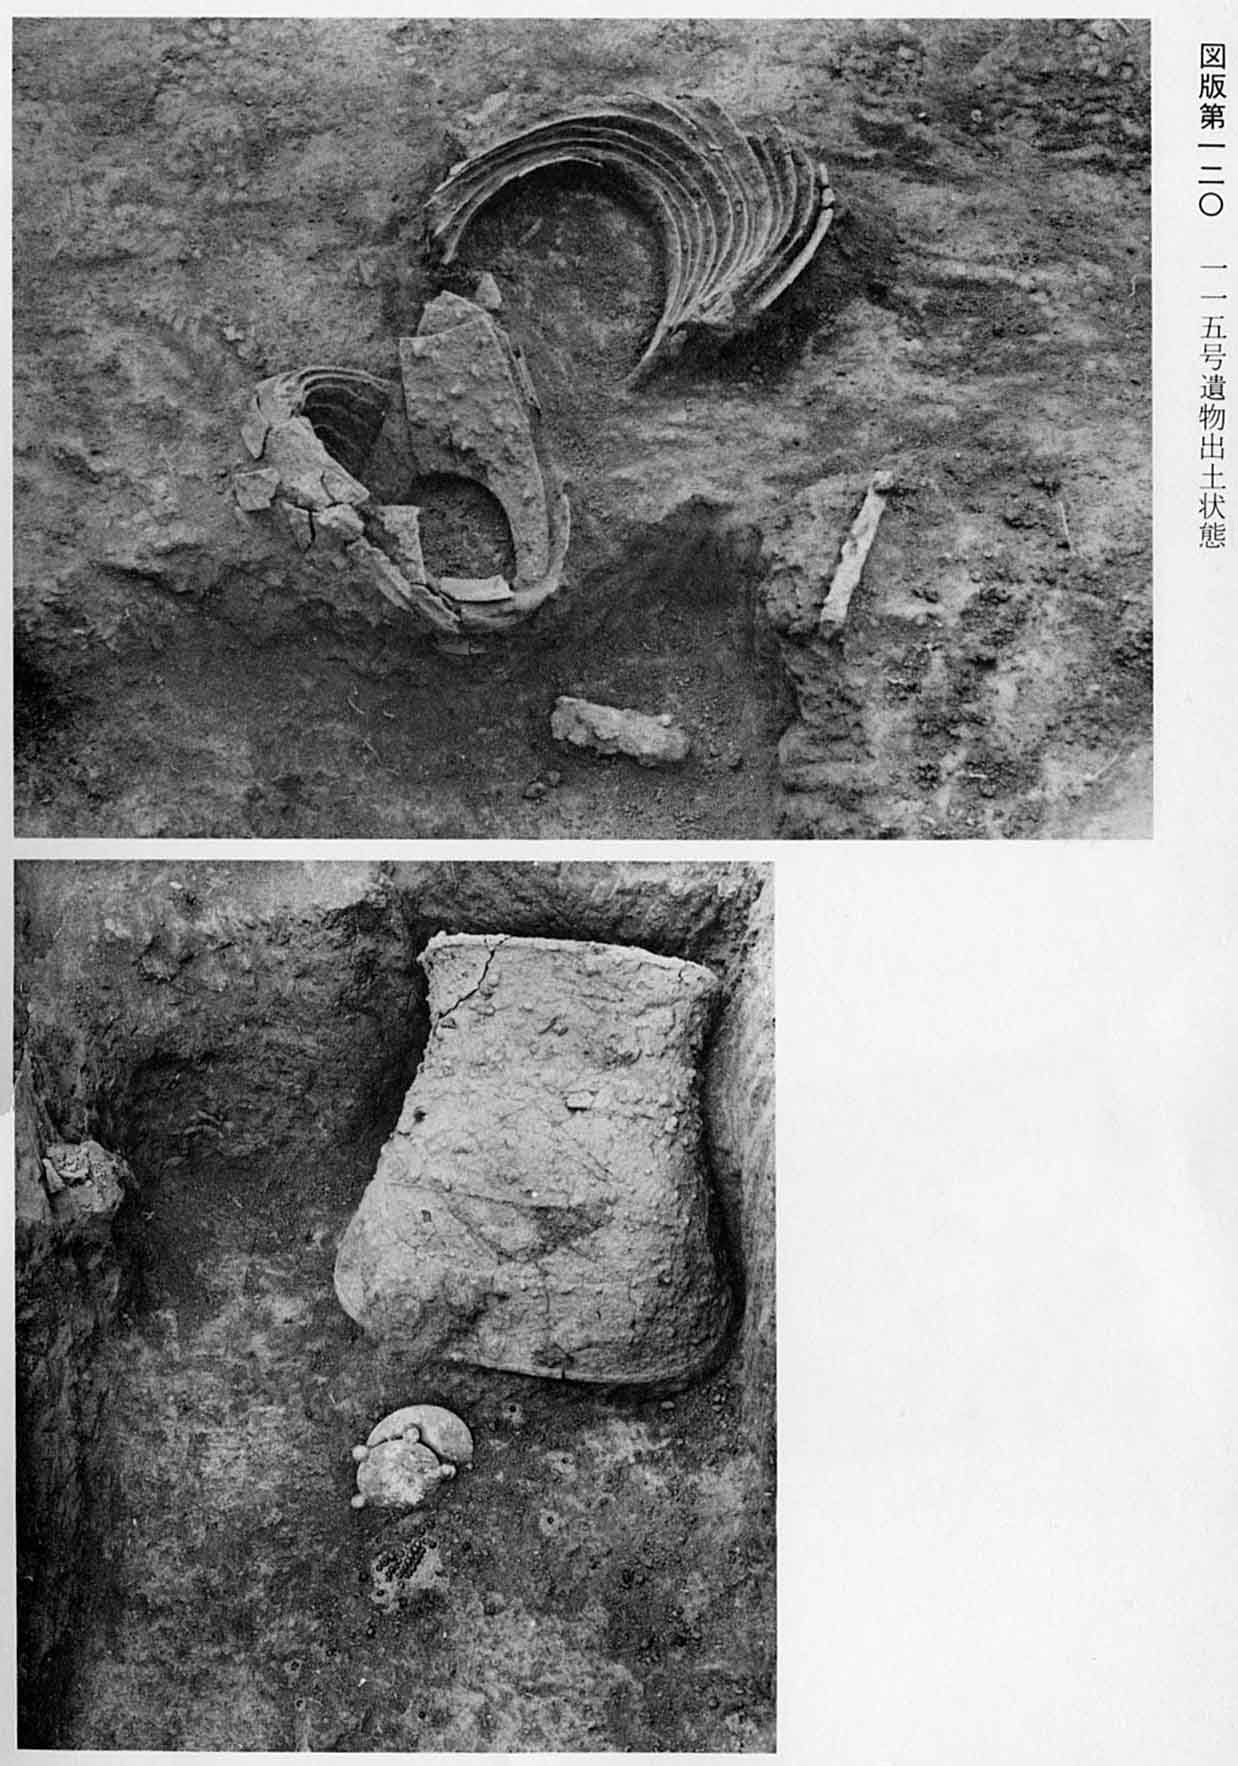 壺のようなものと、土器のようなものが、それぞれ出土した状態で写されている、図版120のモノクロ写真